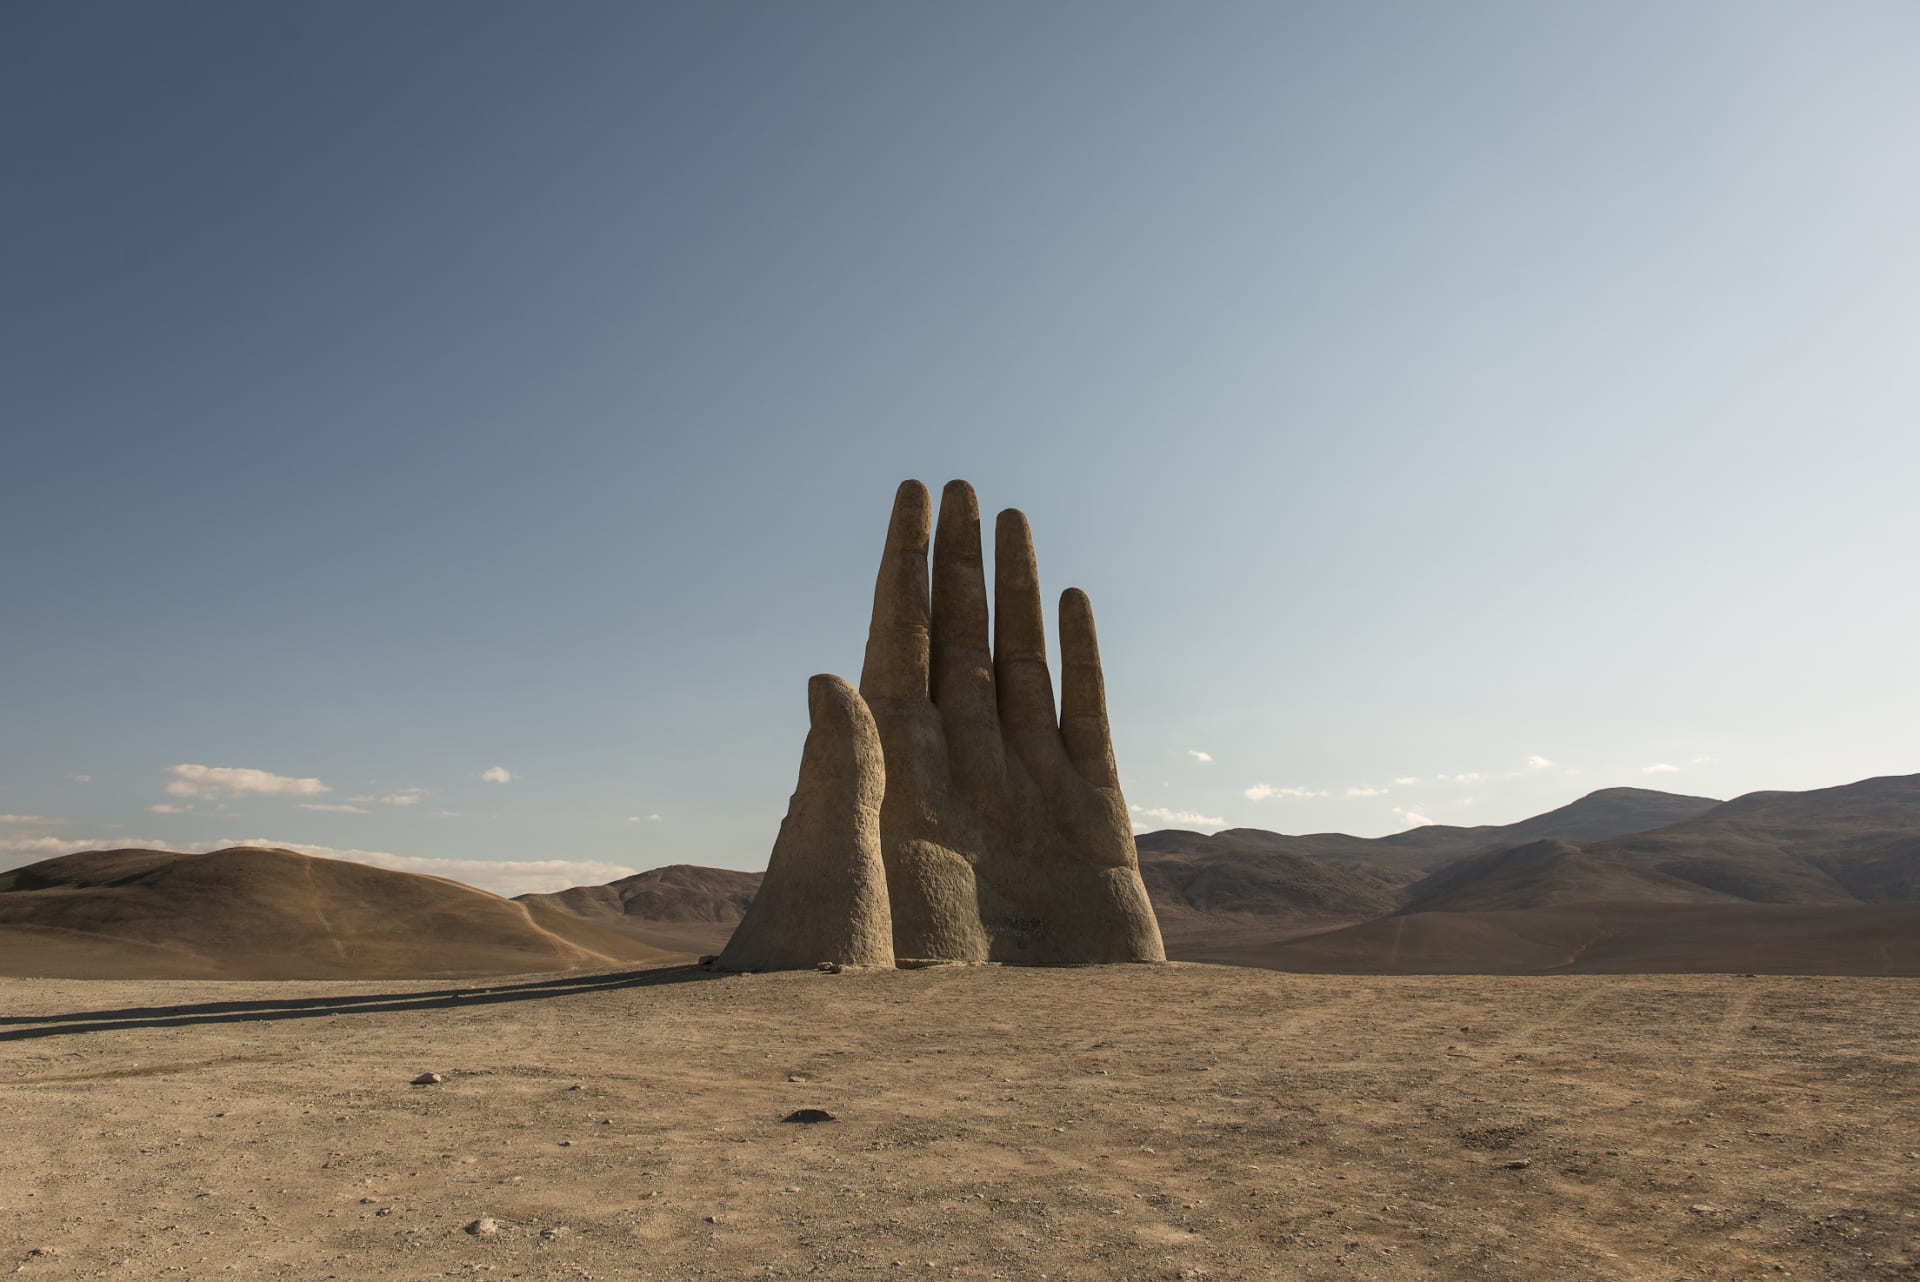 يد عملاقة تخرج من أرض الصحراء.. هل هي معلم أم سراب؟